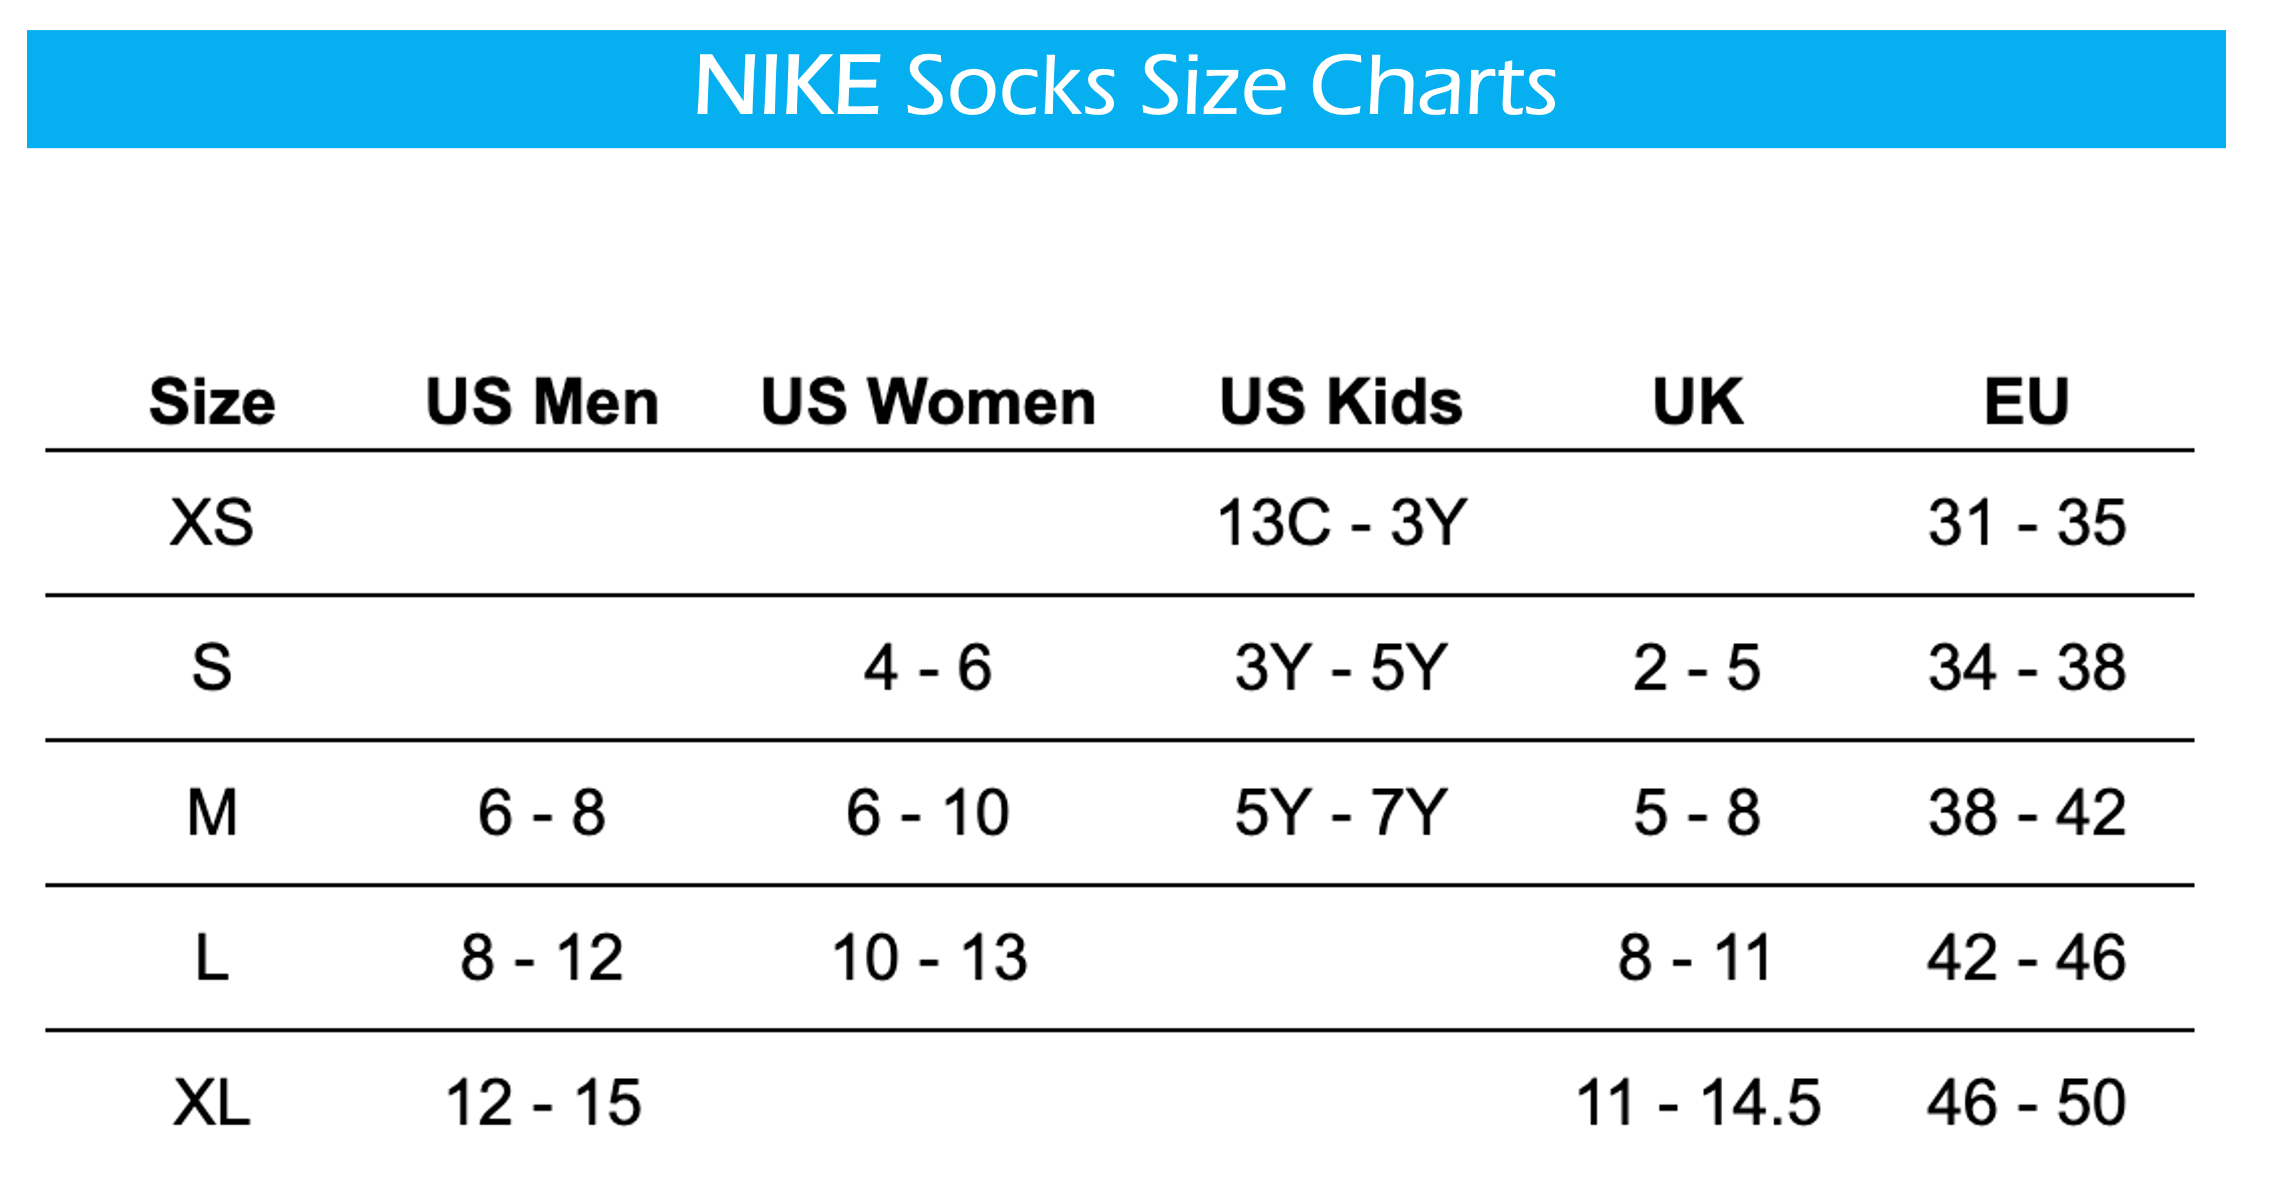 Nike Unisex Men's Women's Cotton Cushion Crew Socks 3-Pack - Black